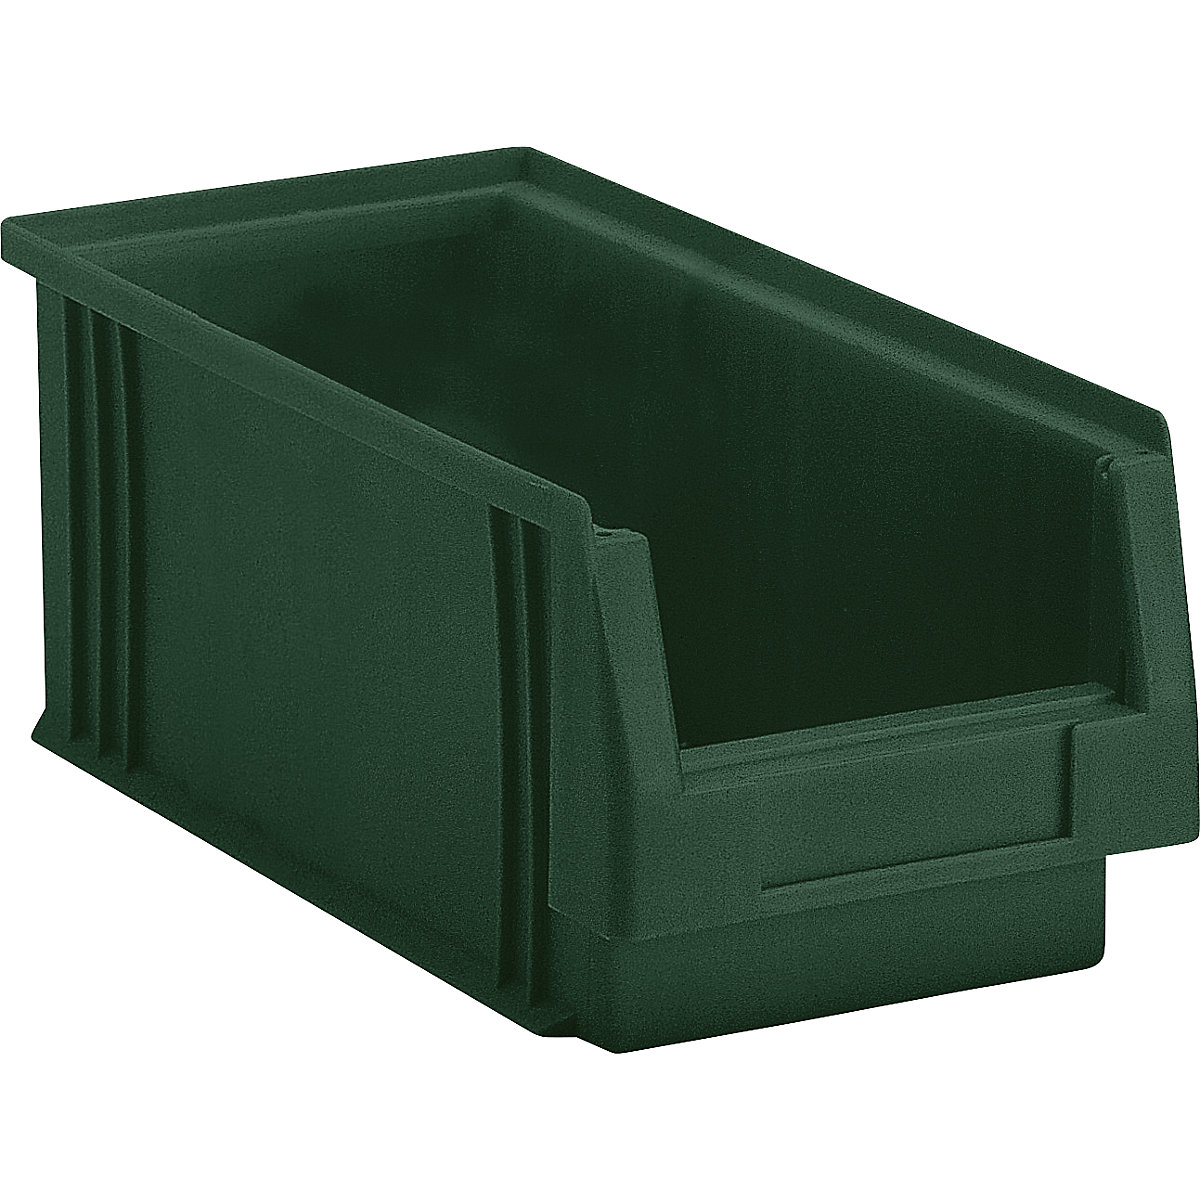 Otwarty pojemnik magazynowy z polipropylenu, poj. 3,5 l, opak. 25 szt., zielony-5